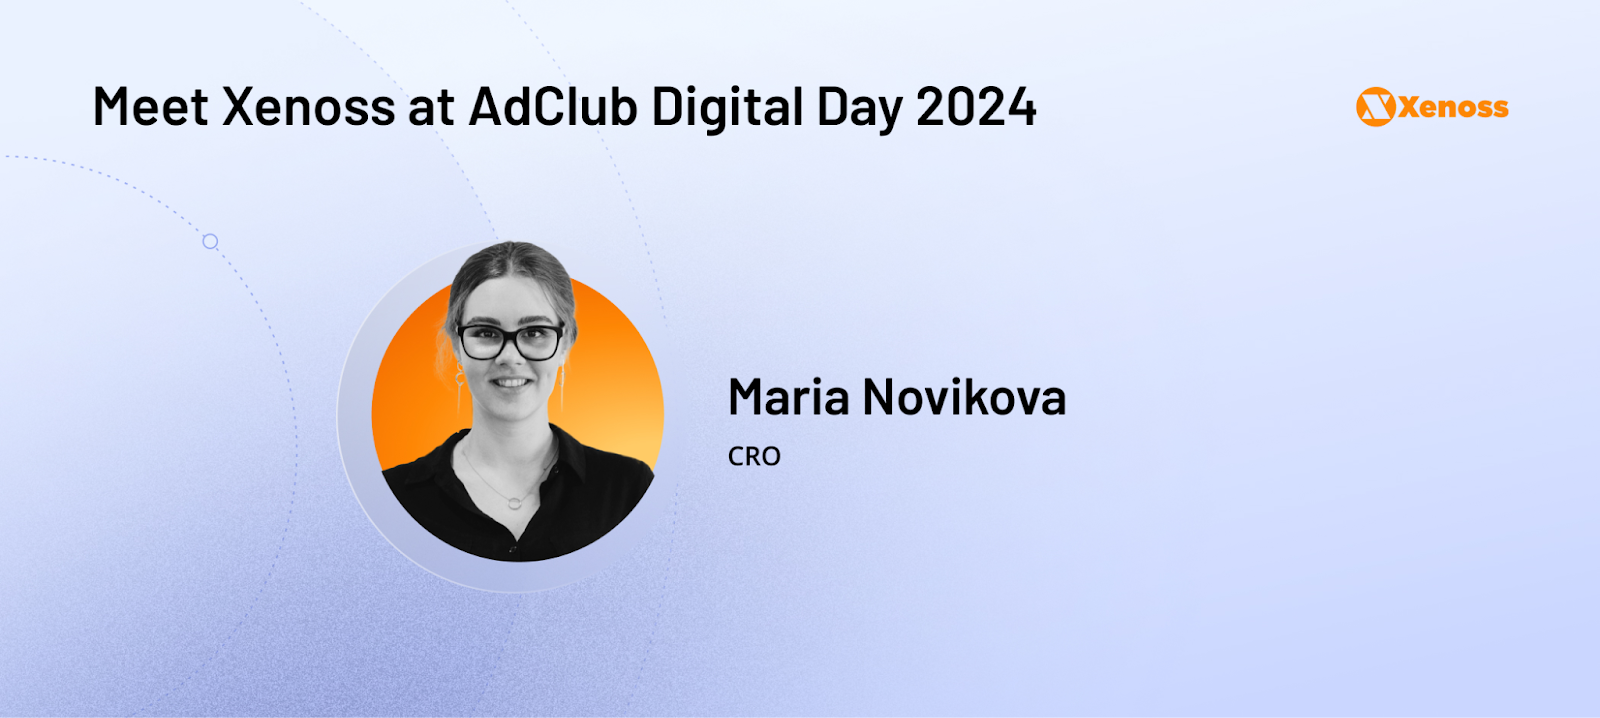 Meet Maria Novikova at AdClub Digital Day 2024 